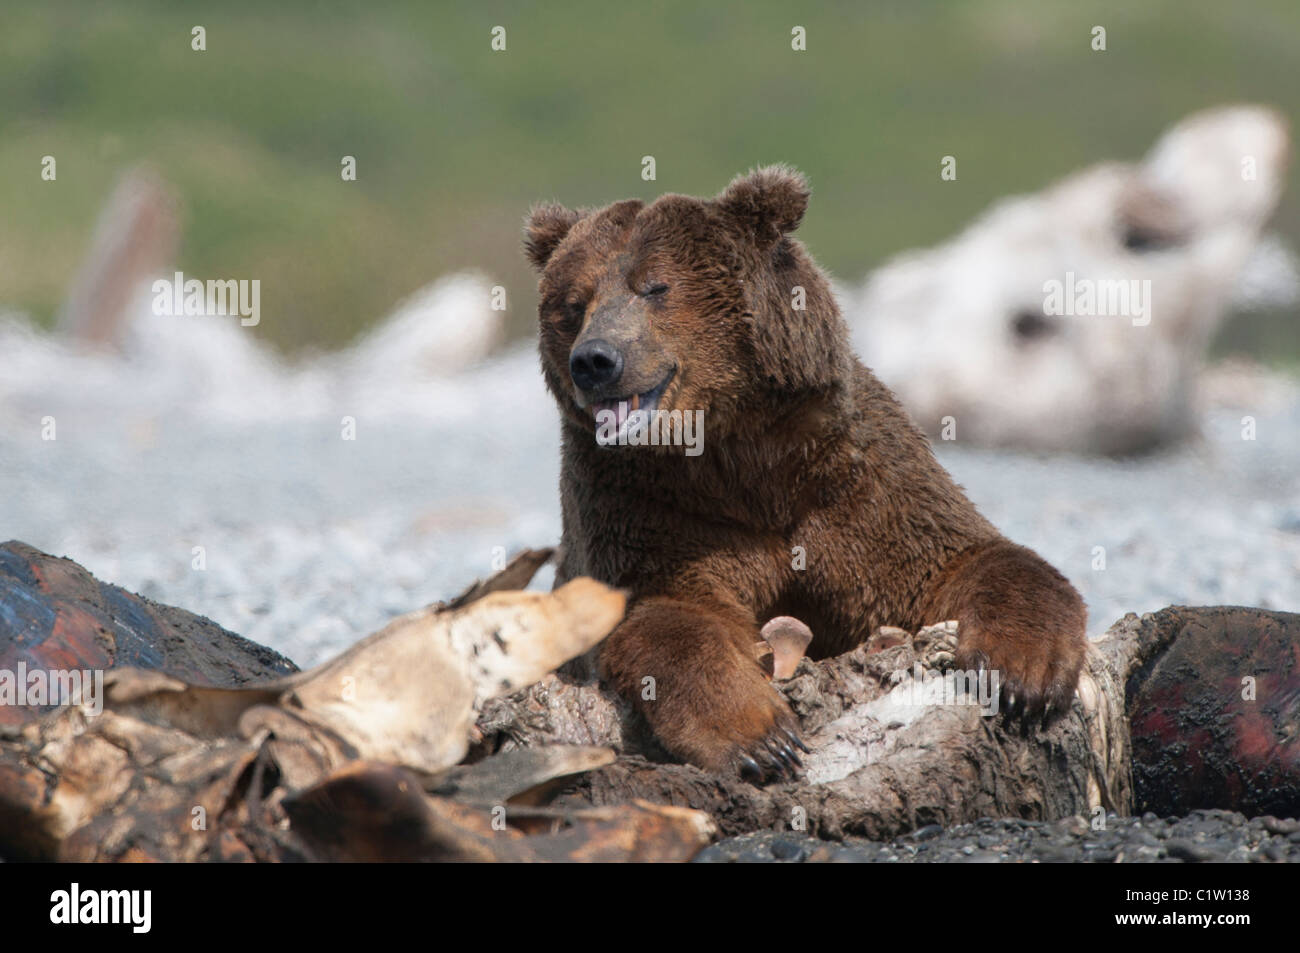 Close-up of a Kodiak brown bear (Ursus arctos middendorffi), Swikshak, Katami Coast, Alaska, USA Stock Photo